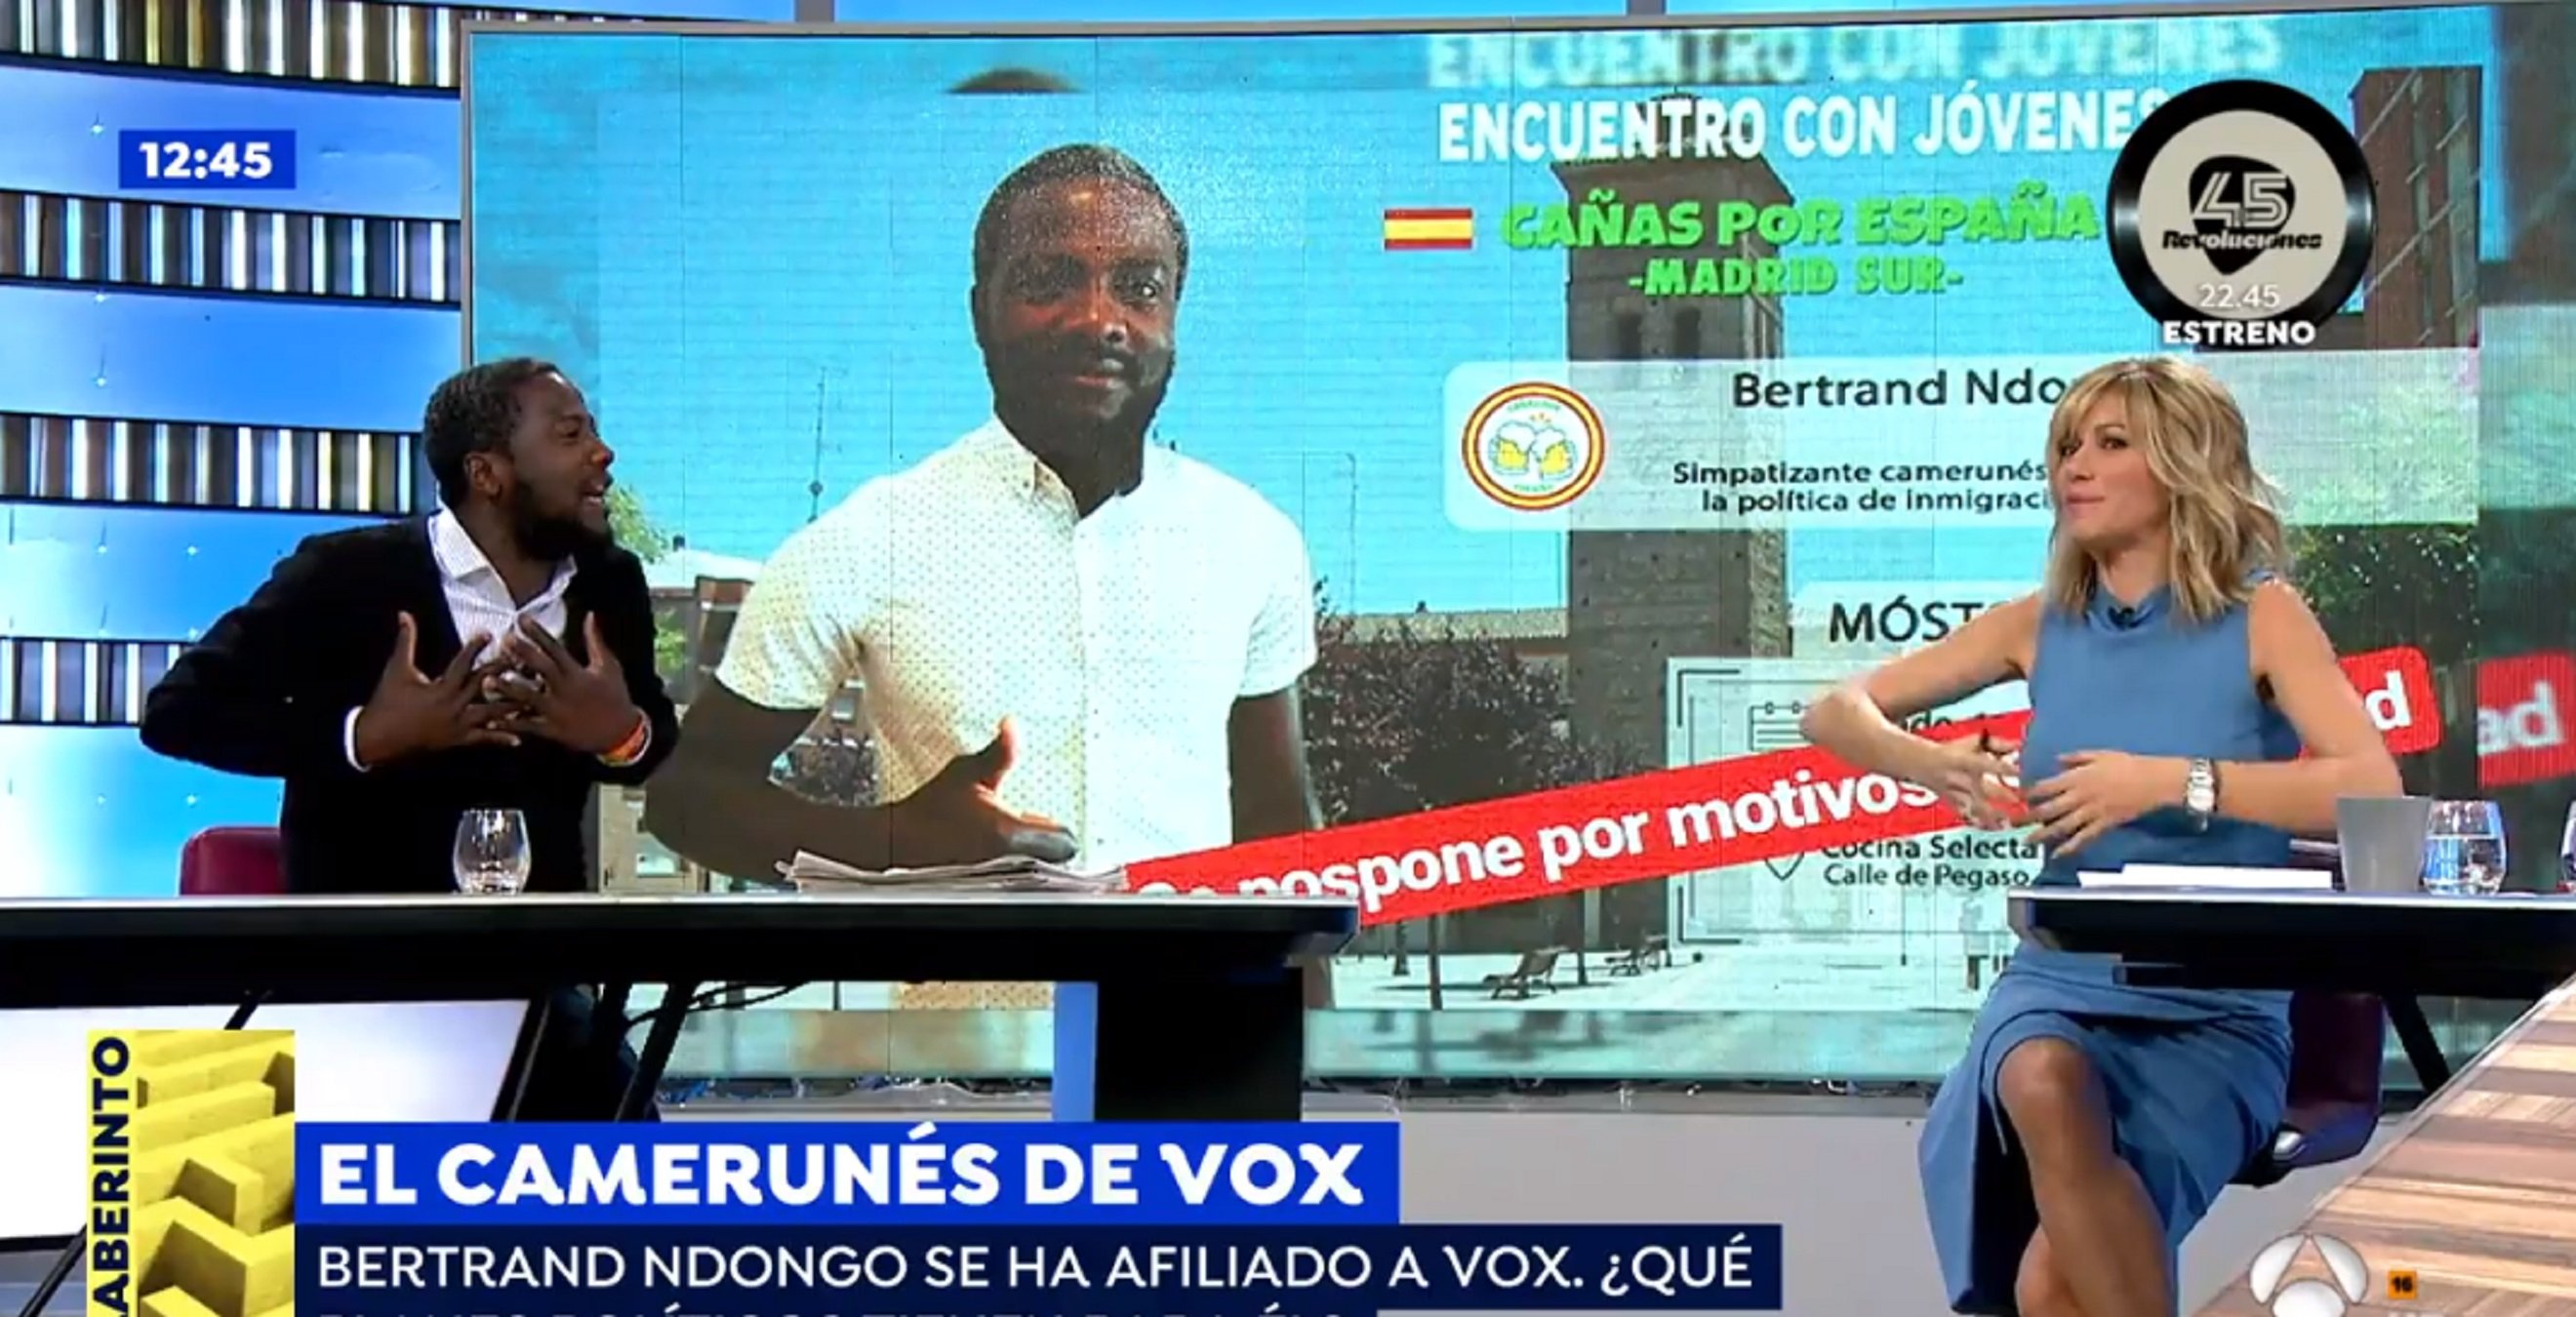 L'altíssima tensió entre Griso i un camerunès de Vox acaba sent trending topic